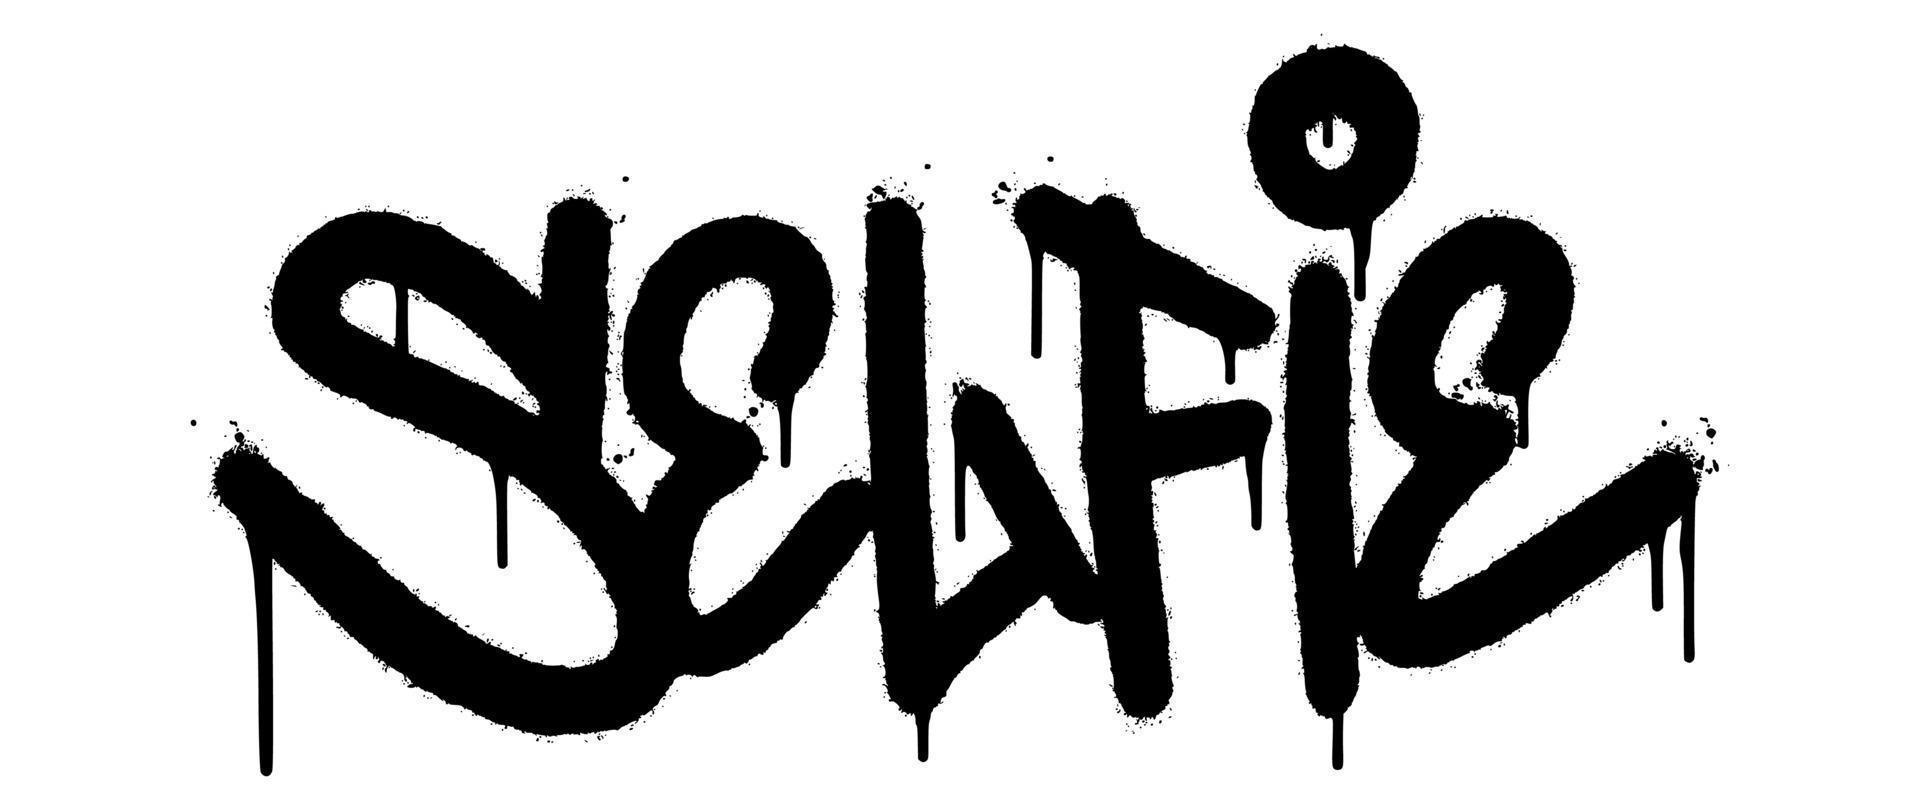 palavra selfie grafite pulverizado isolado no fundo branco. pulverizado graffiti de fonte incrível. ilustração vetorial. vetor